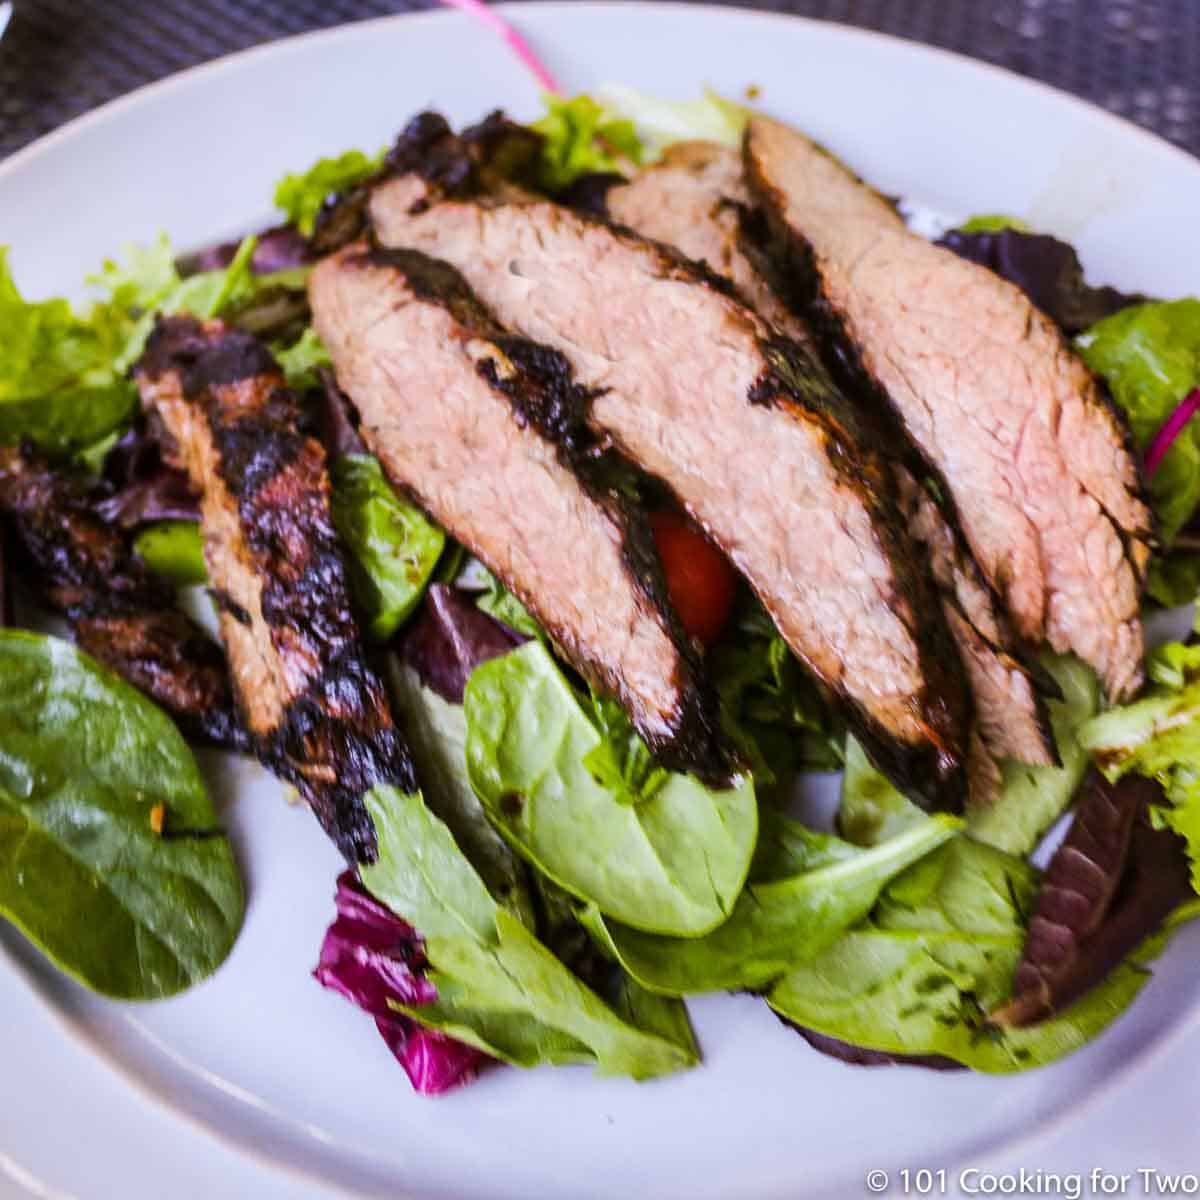 slices of grilled flank steak on salad